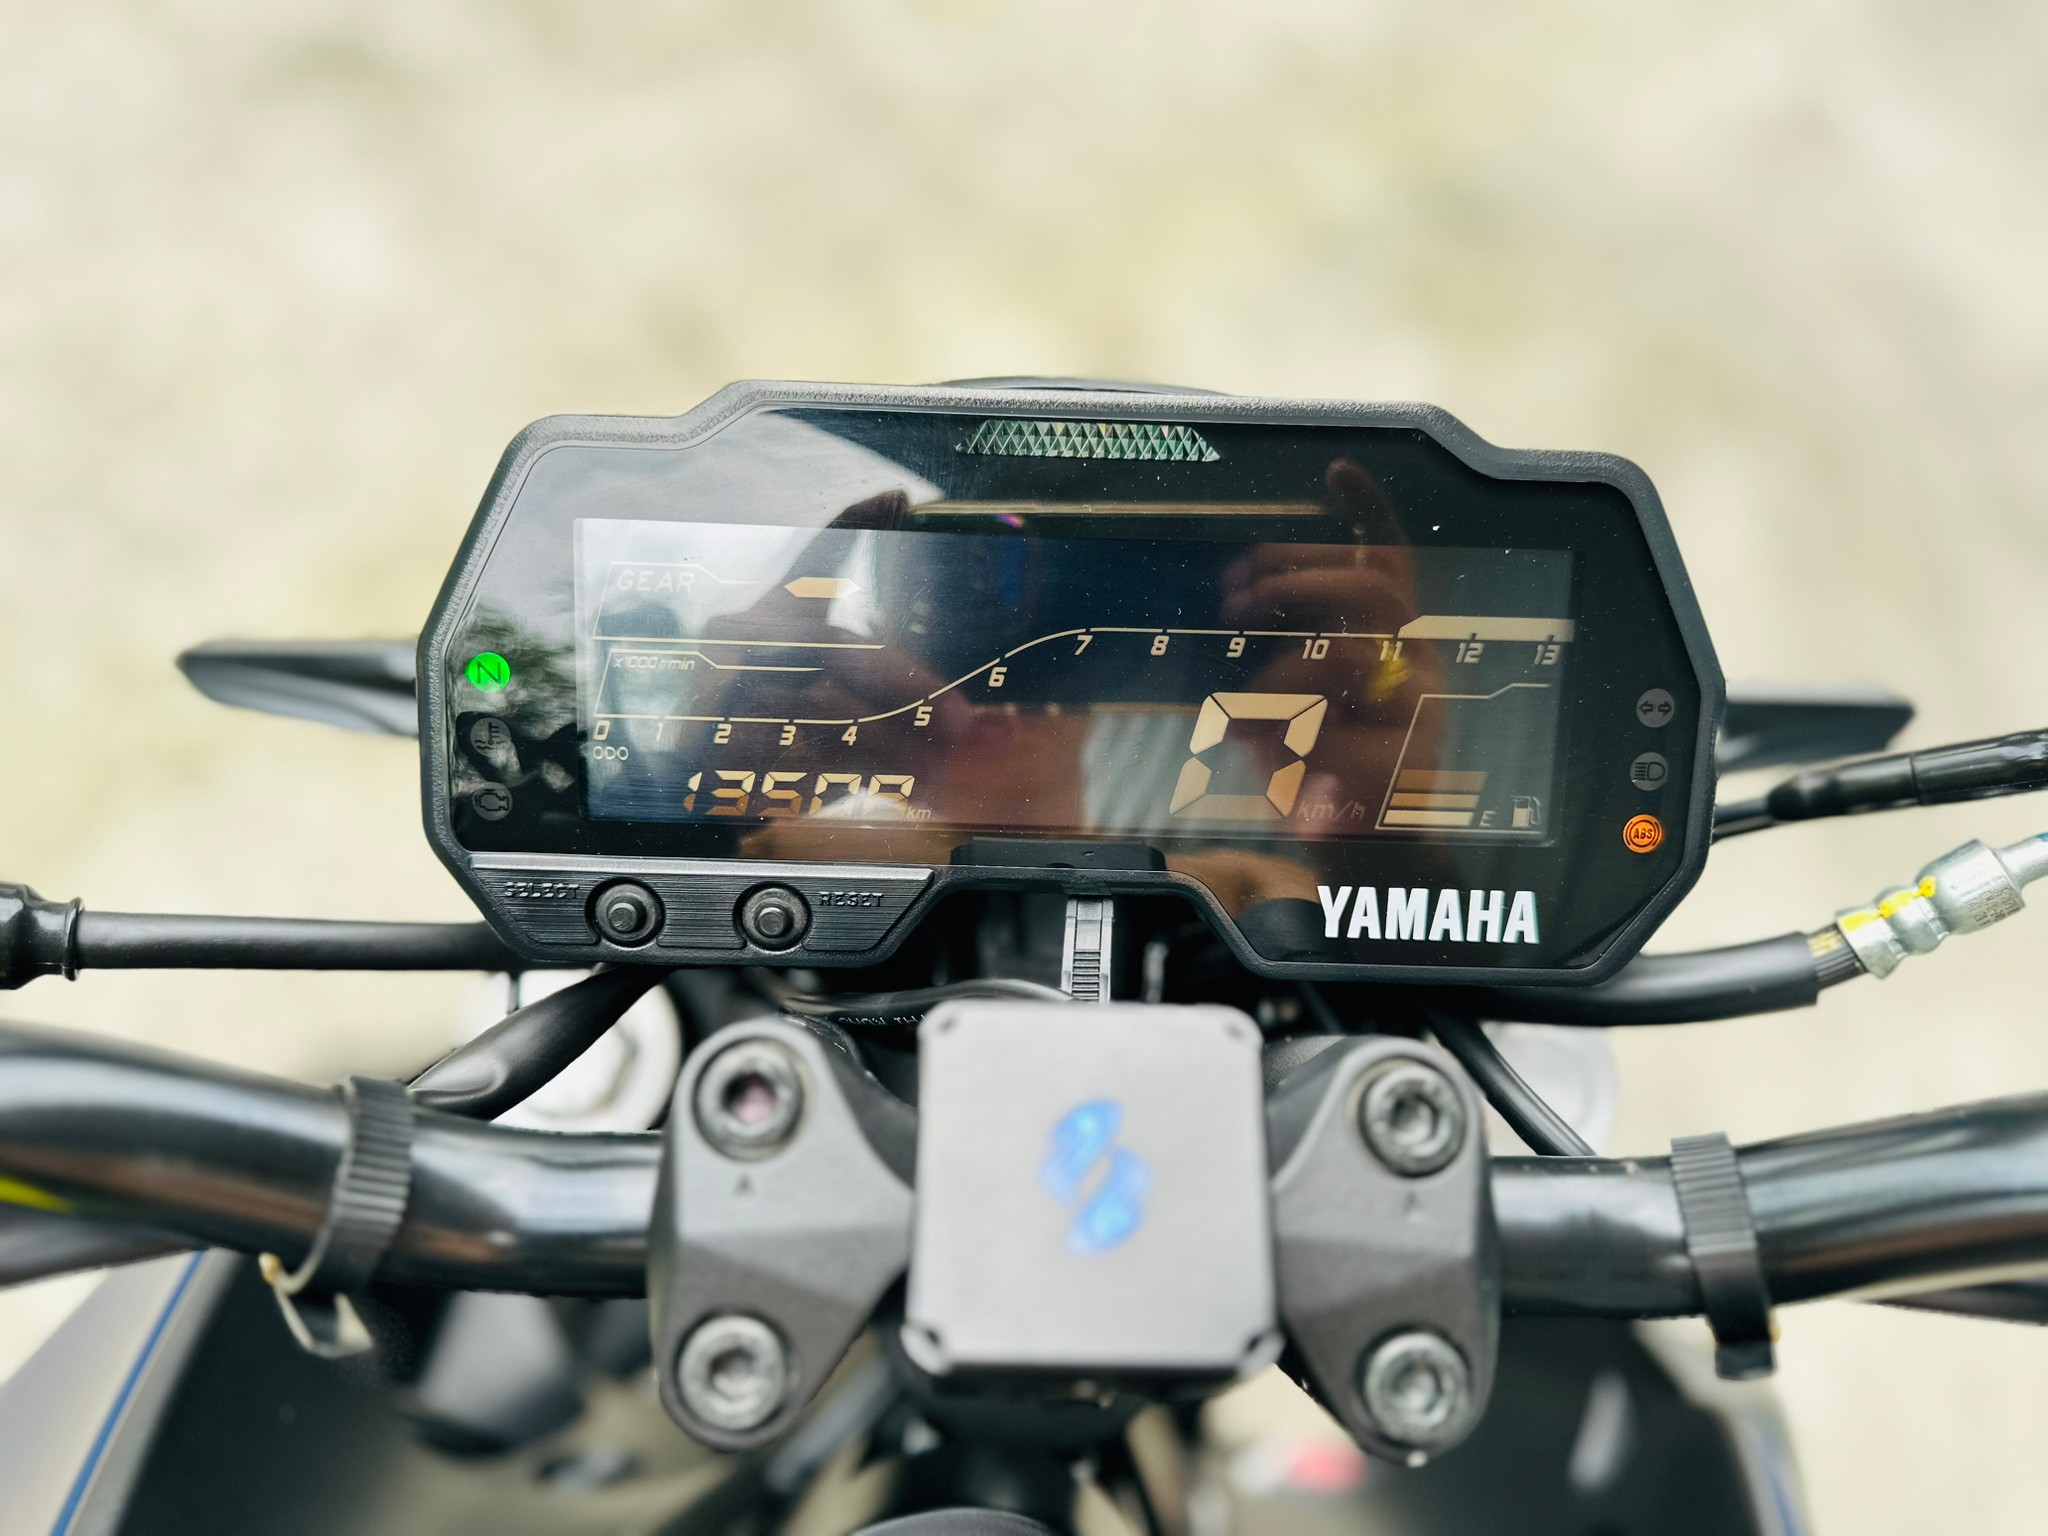 YAMAHA MT-15 - 中古/二手車出售中 Yamaha MT-15 abs 可協助貸款 | 摩托販